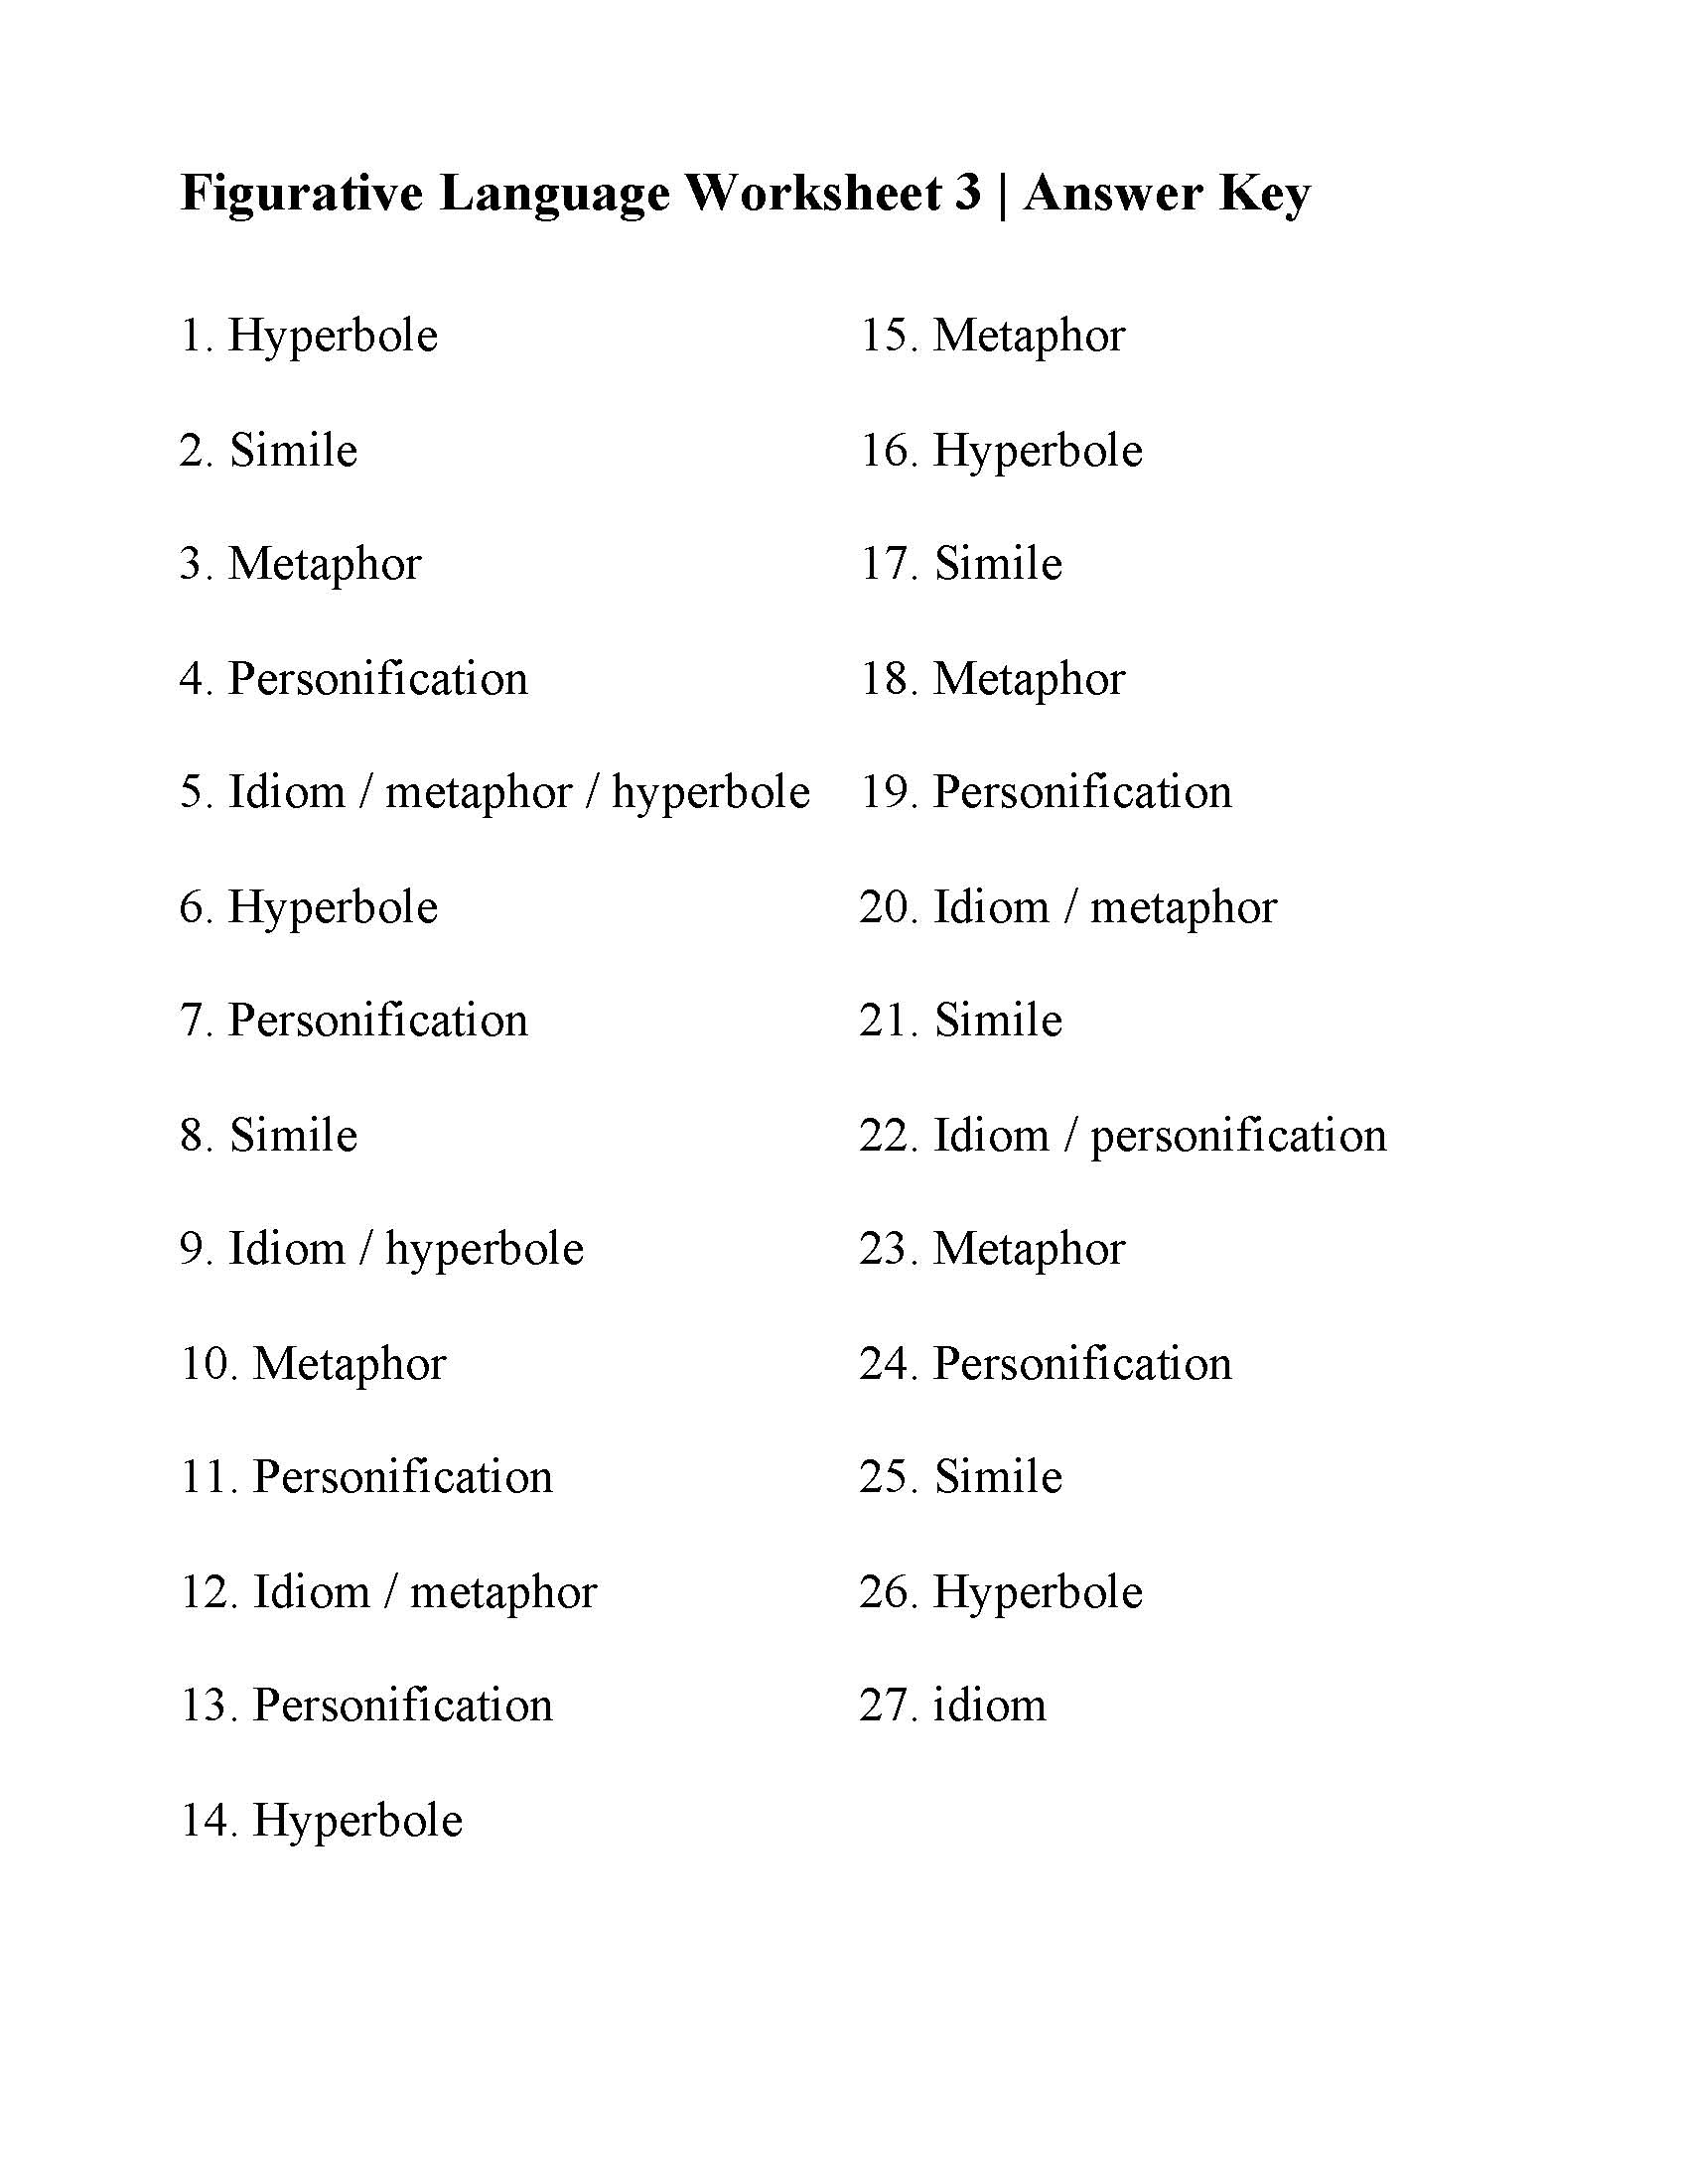 figurative language worksheet 21 answer key Intended For Figurative Language Worksheet 2 Answers